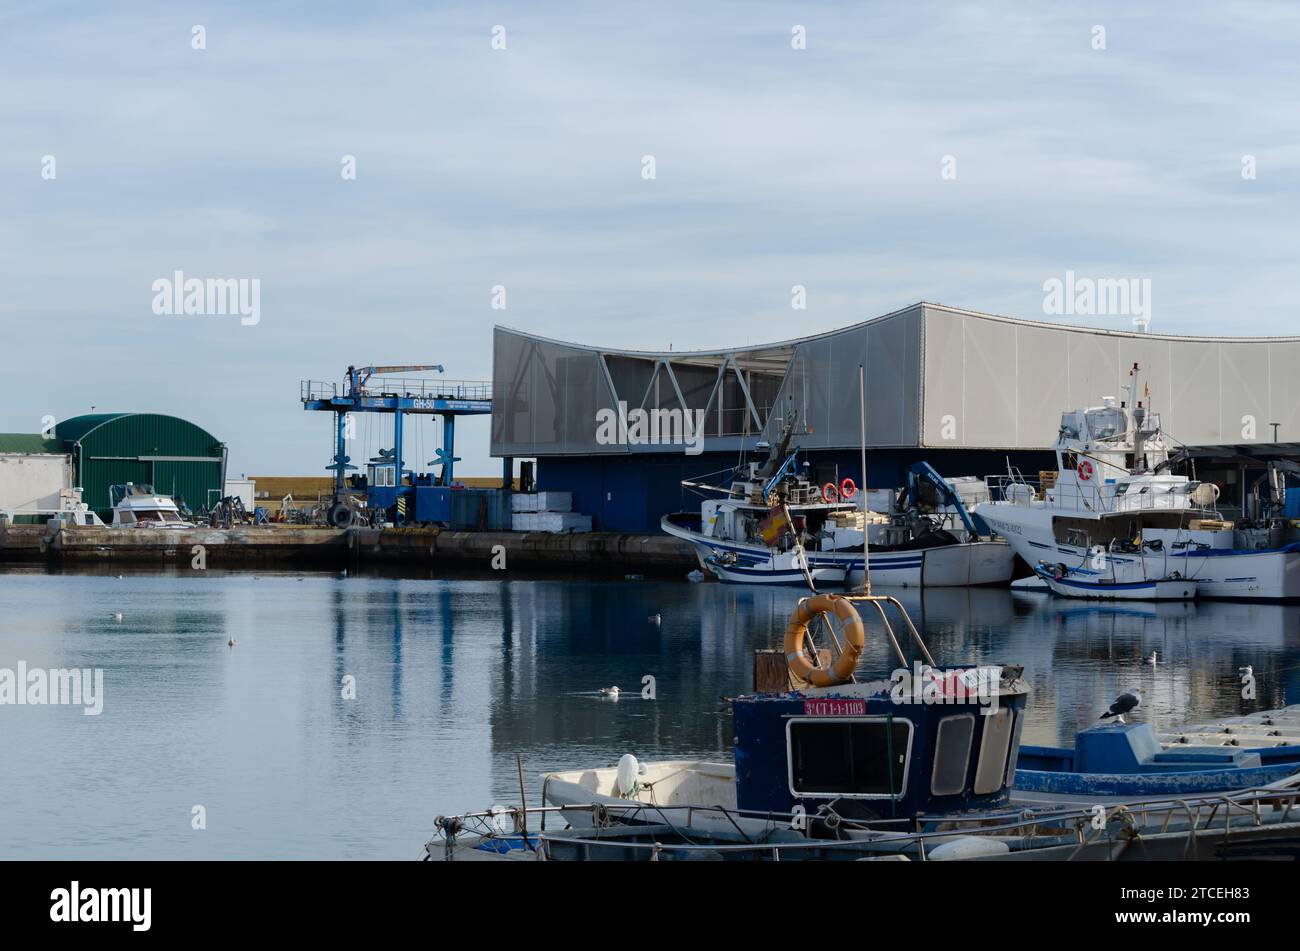 ROQUETAS DE MAR, ESPAÑA - 07 DE DICIEMBRE de 2023 La principal actividad del puerto es la pesca, pero los barcos recreativos y deportivos también pueden amarrar allí Foto de stock